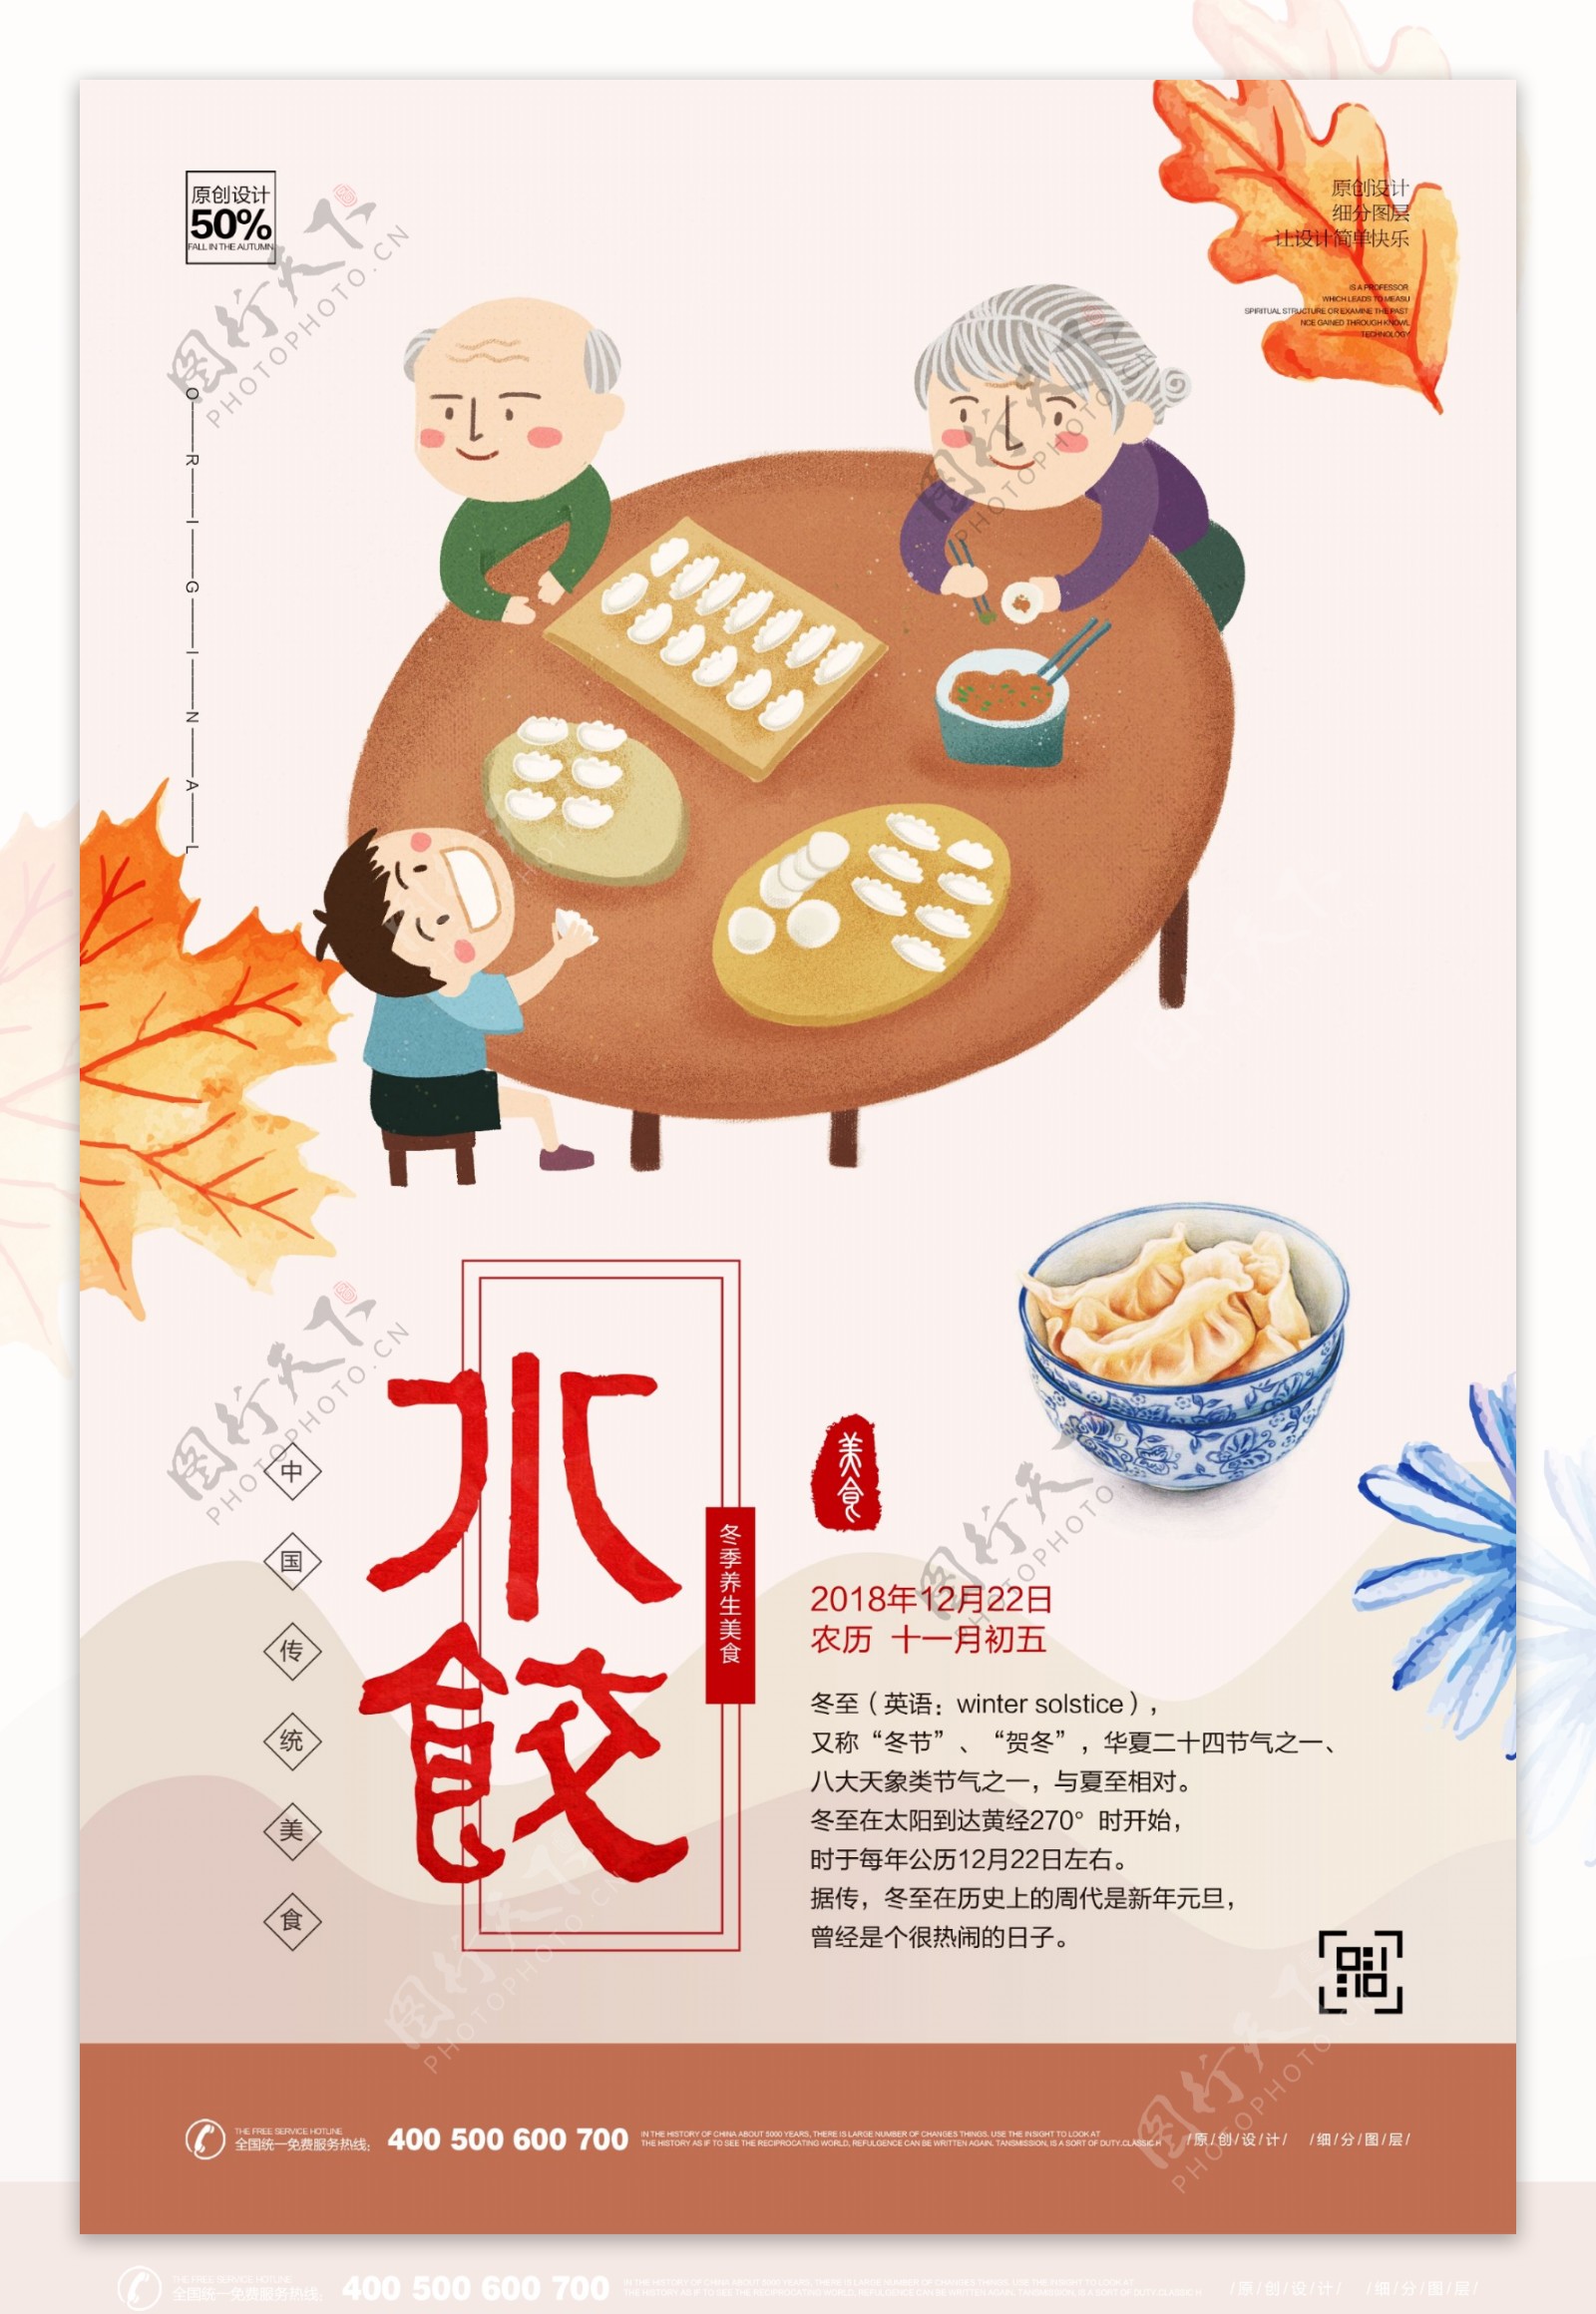 创意插画饺子美食宣传海报模板设计